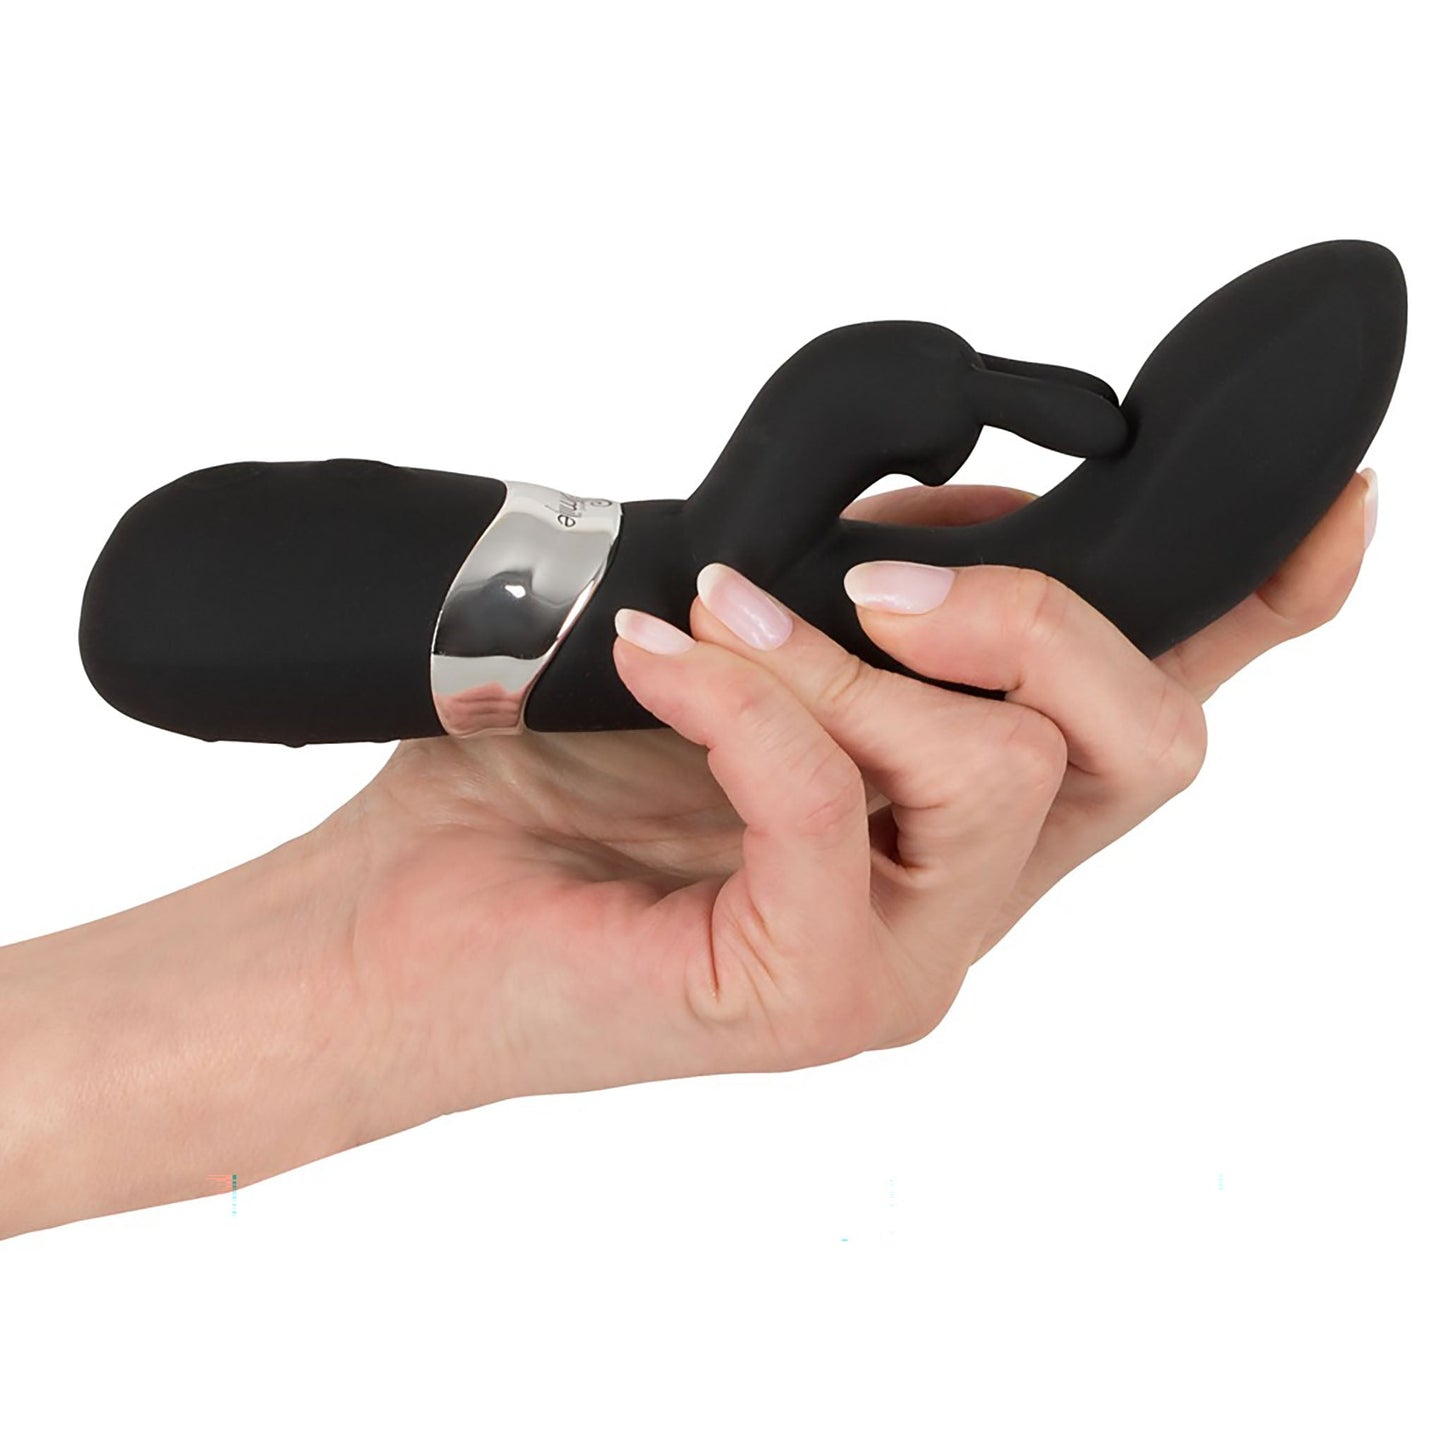 Rechargeable Rabbit Vibe, Vibrator mit Klitorisreizer in schwarz in der Hand gehalten